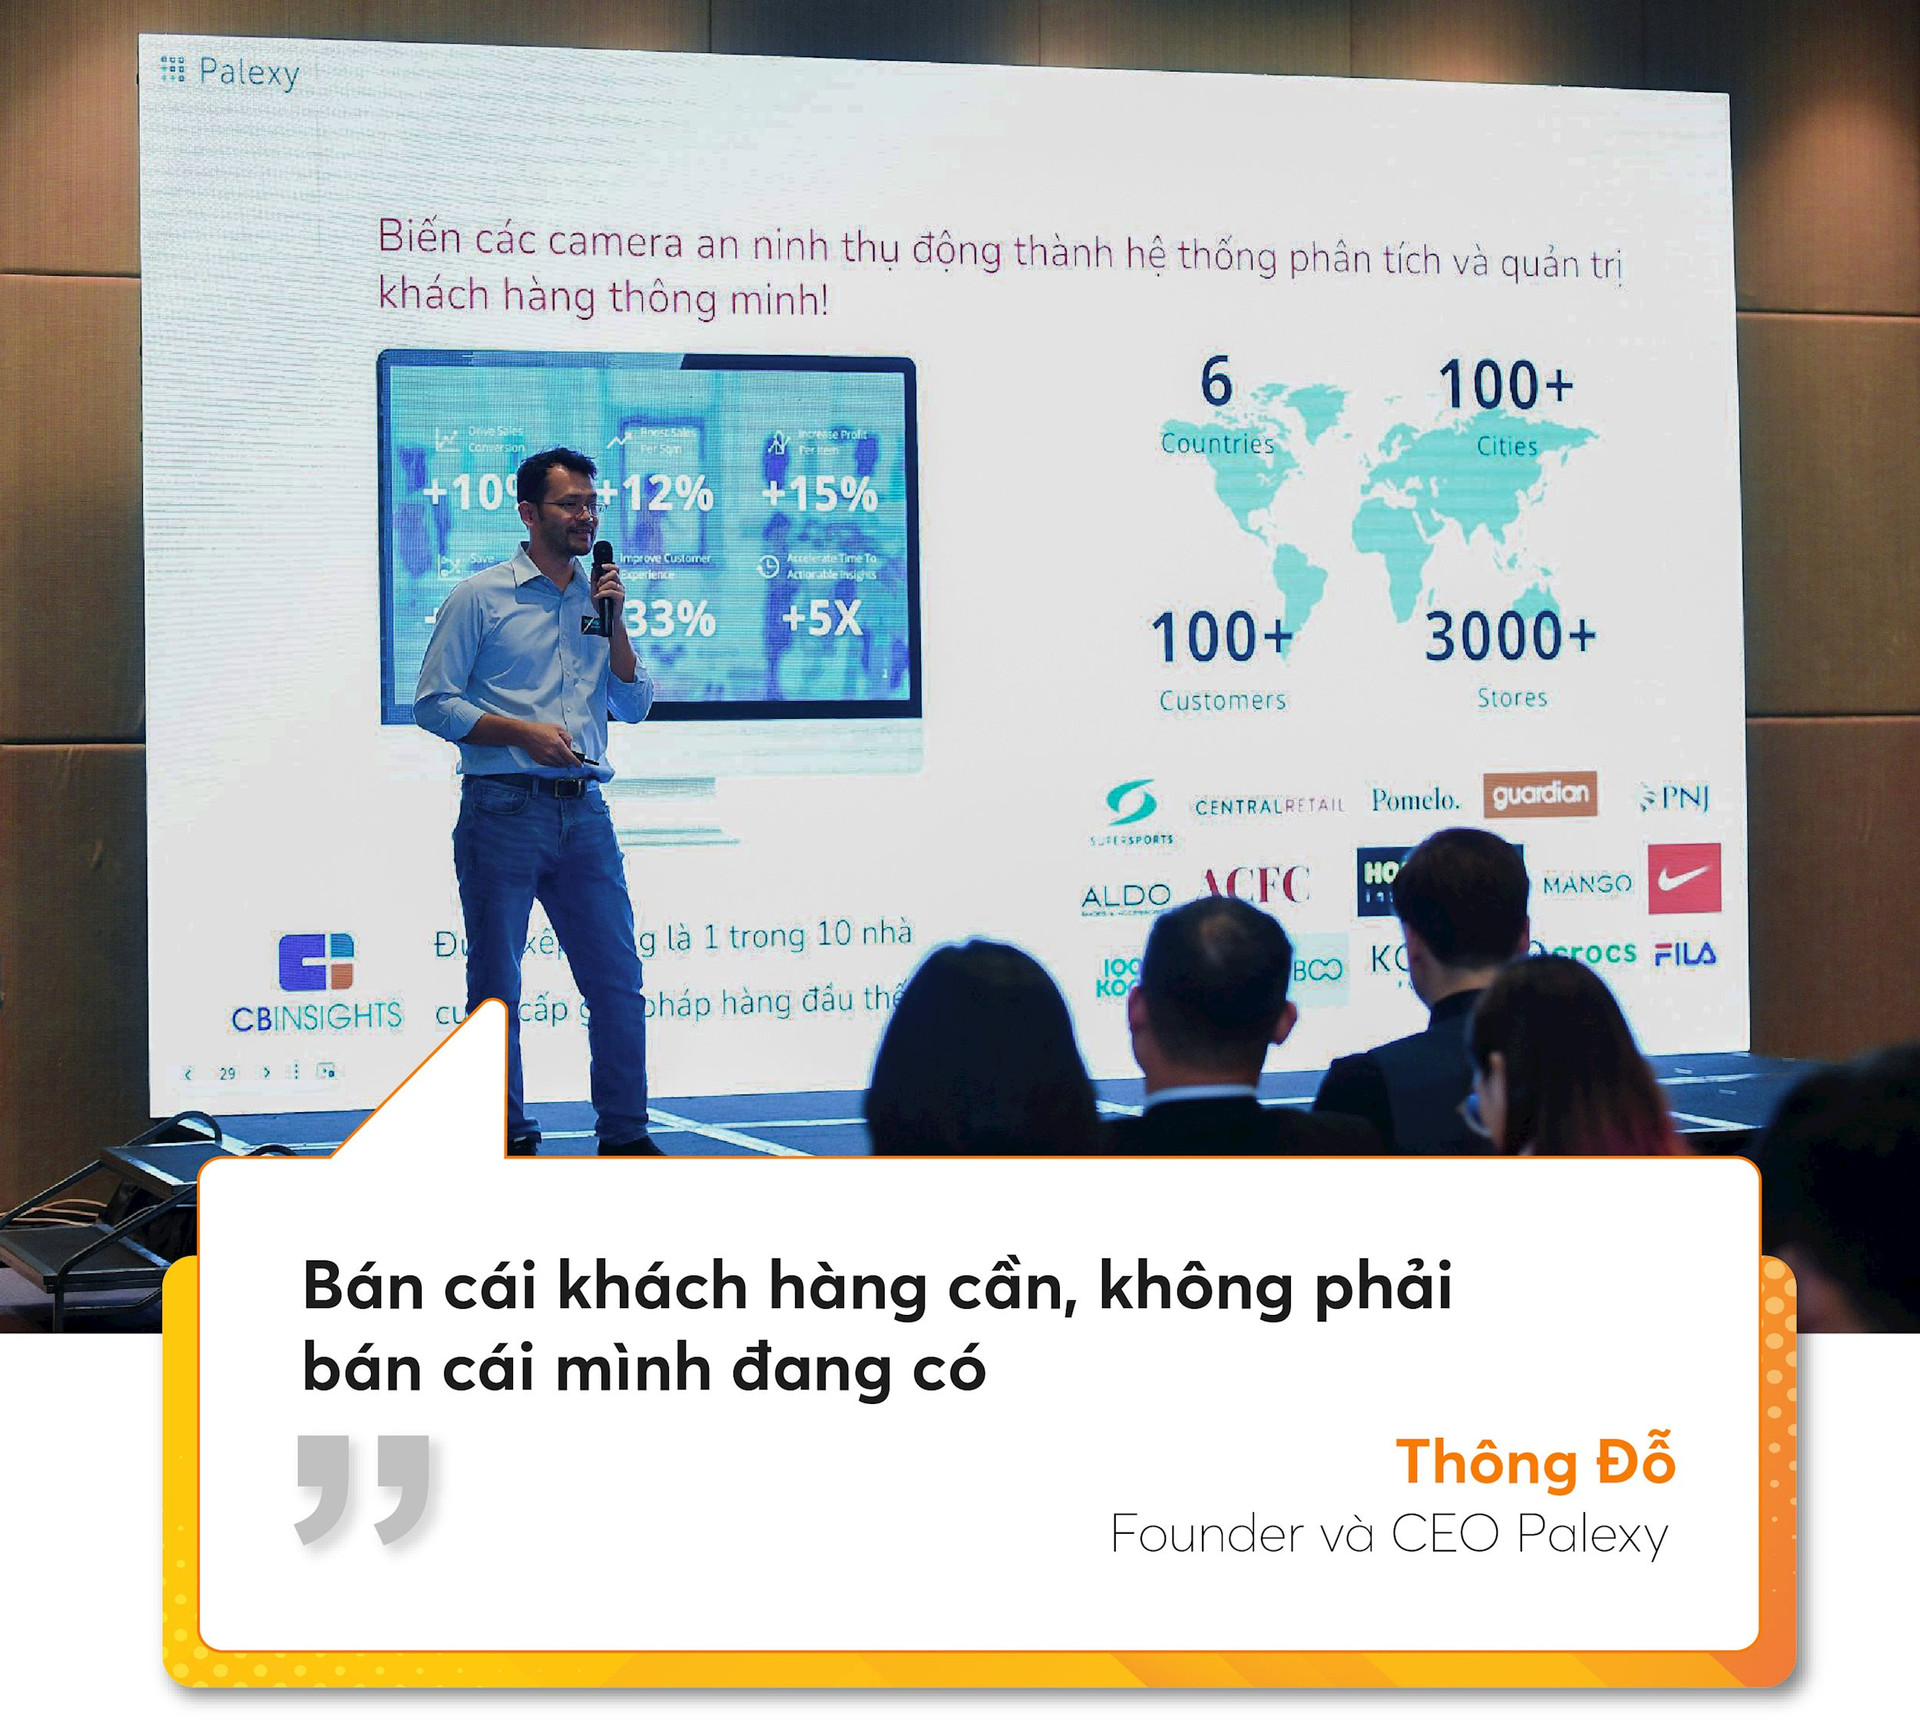 Tiến sĩ AI đưa công nghệ “mắt thần” vào ngành bán lẻ, tích hợp trong 2/3 chuỗi lớn nhất Việt Nam, mở rộng ra 6 nước Đông Nam Á - Ảnh 11.